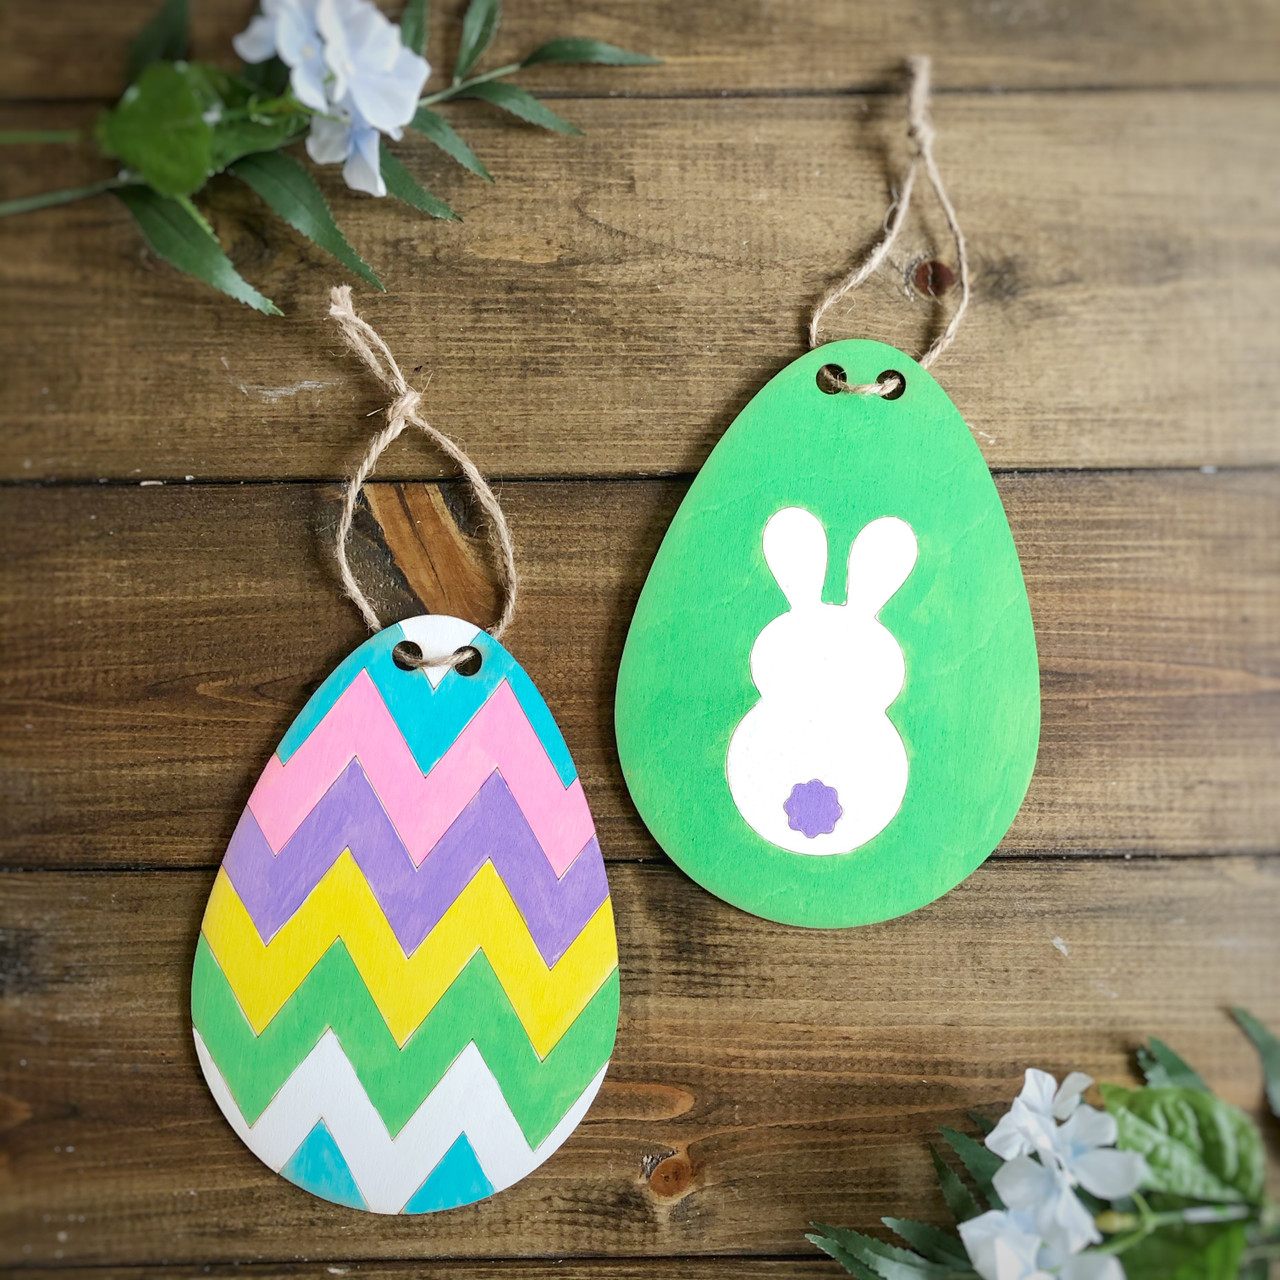 Let the Easter Crafts Begin!